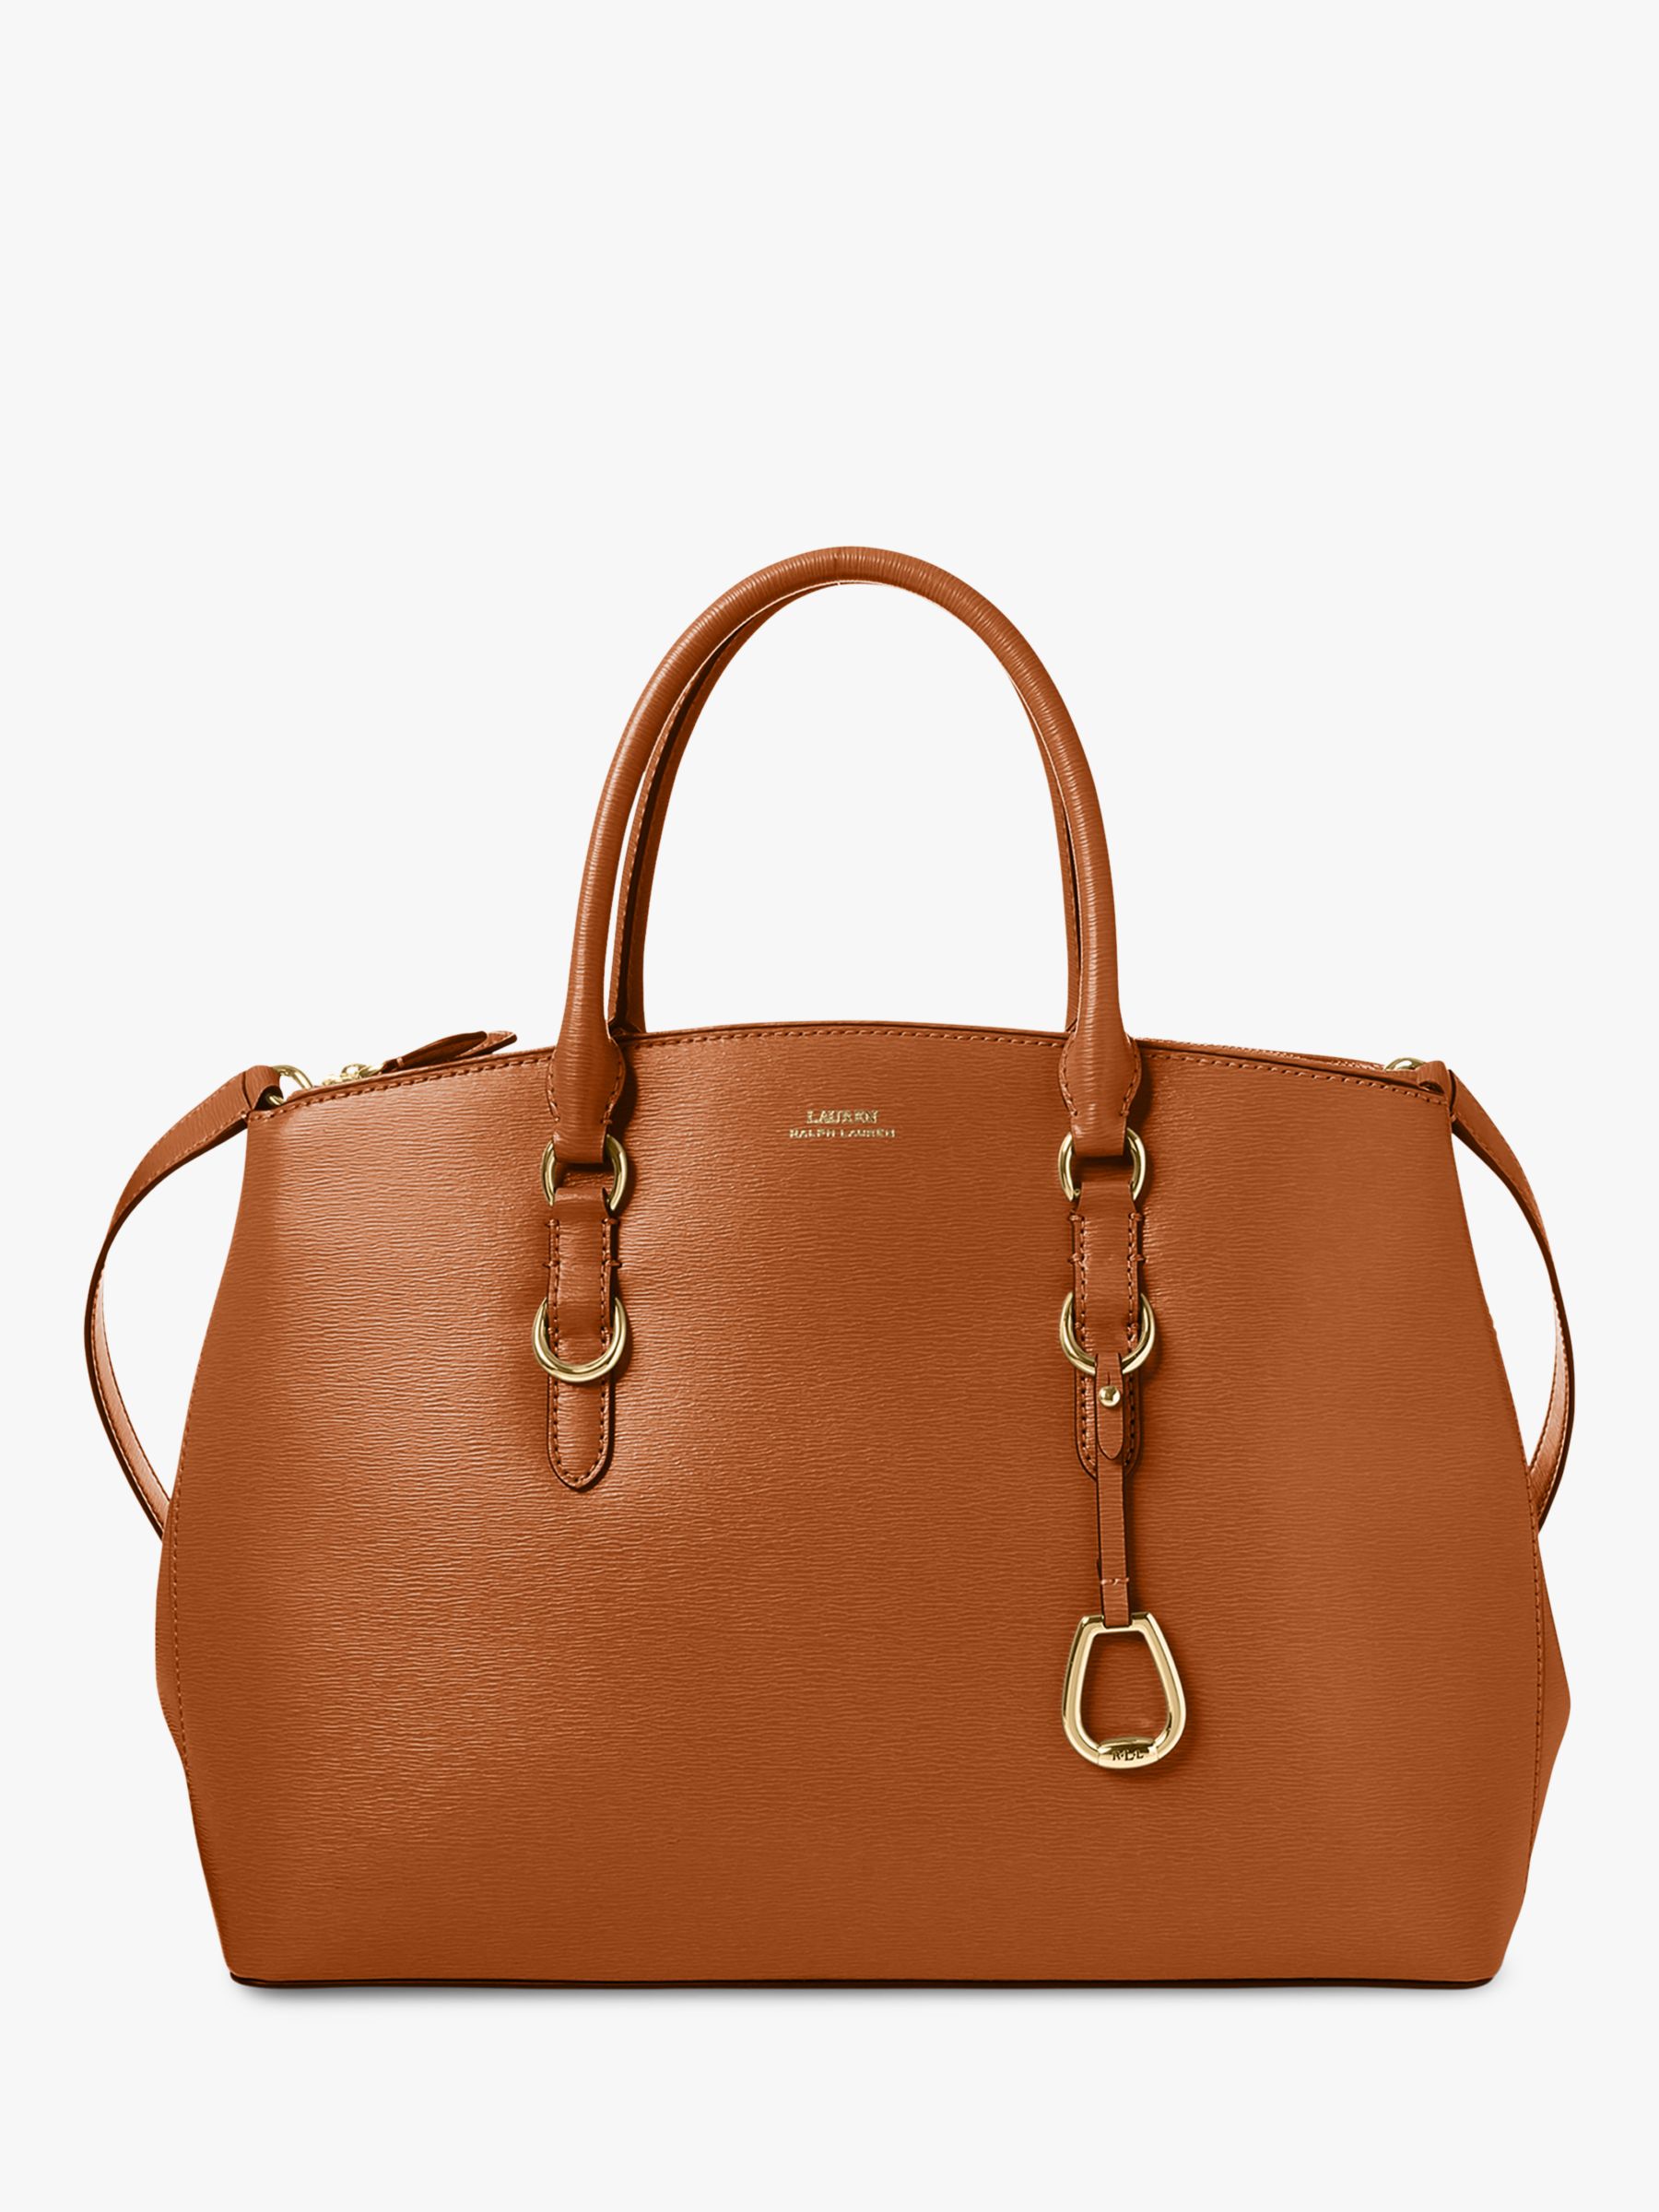 ralph lauren leather handbags